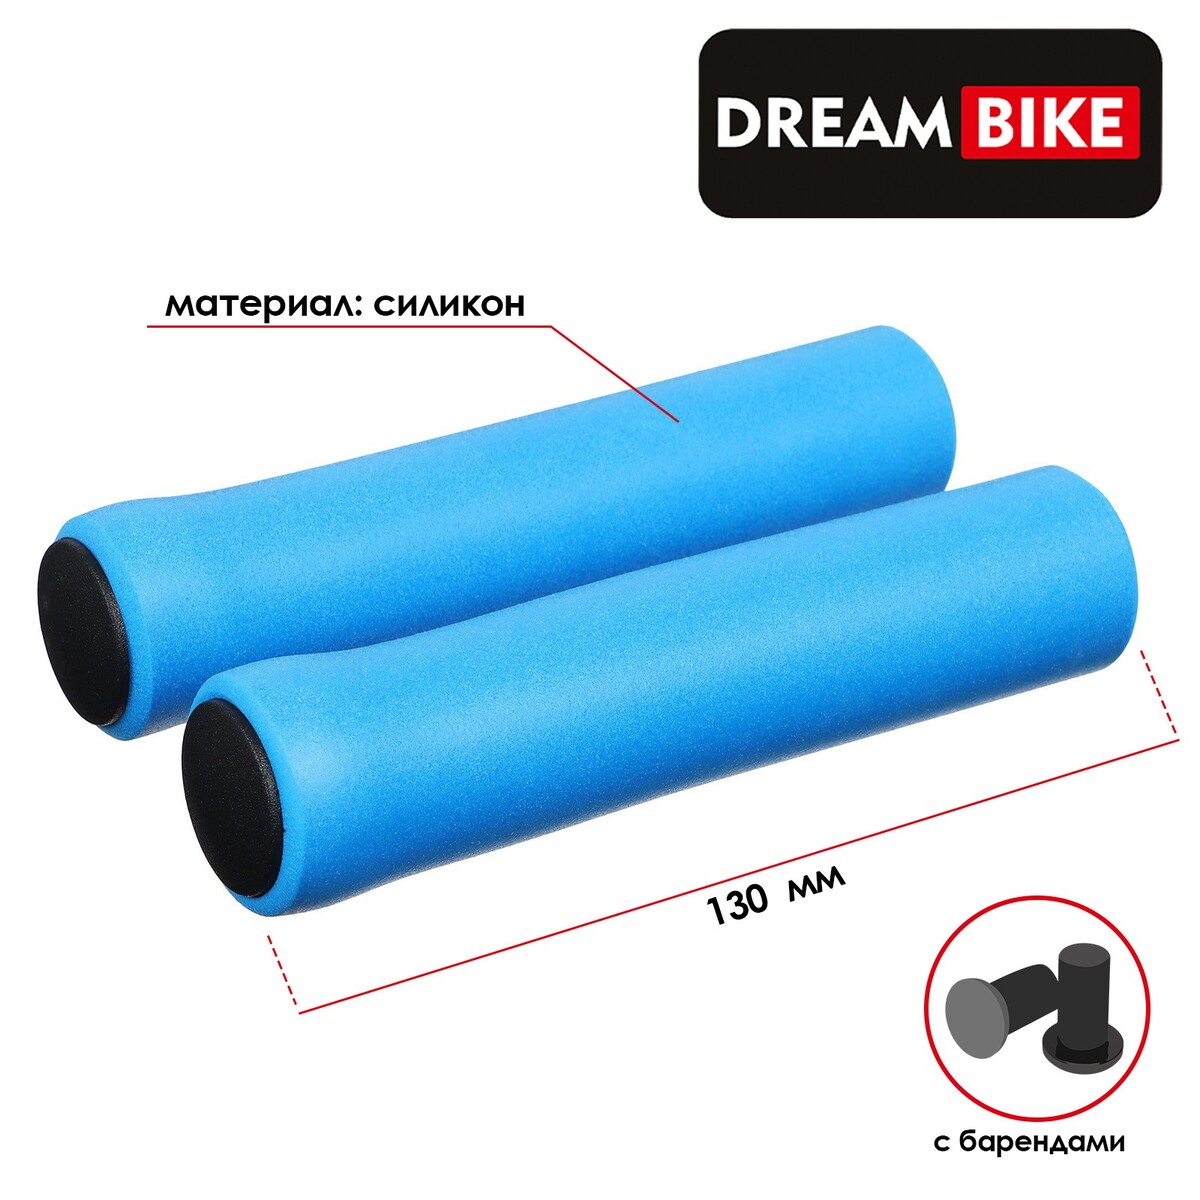 Грипсы 130 мм, dream bike, силиконовые, посадочный диаметр 22,2 мм, цвет синий, Dream Bike